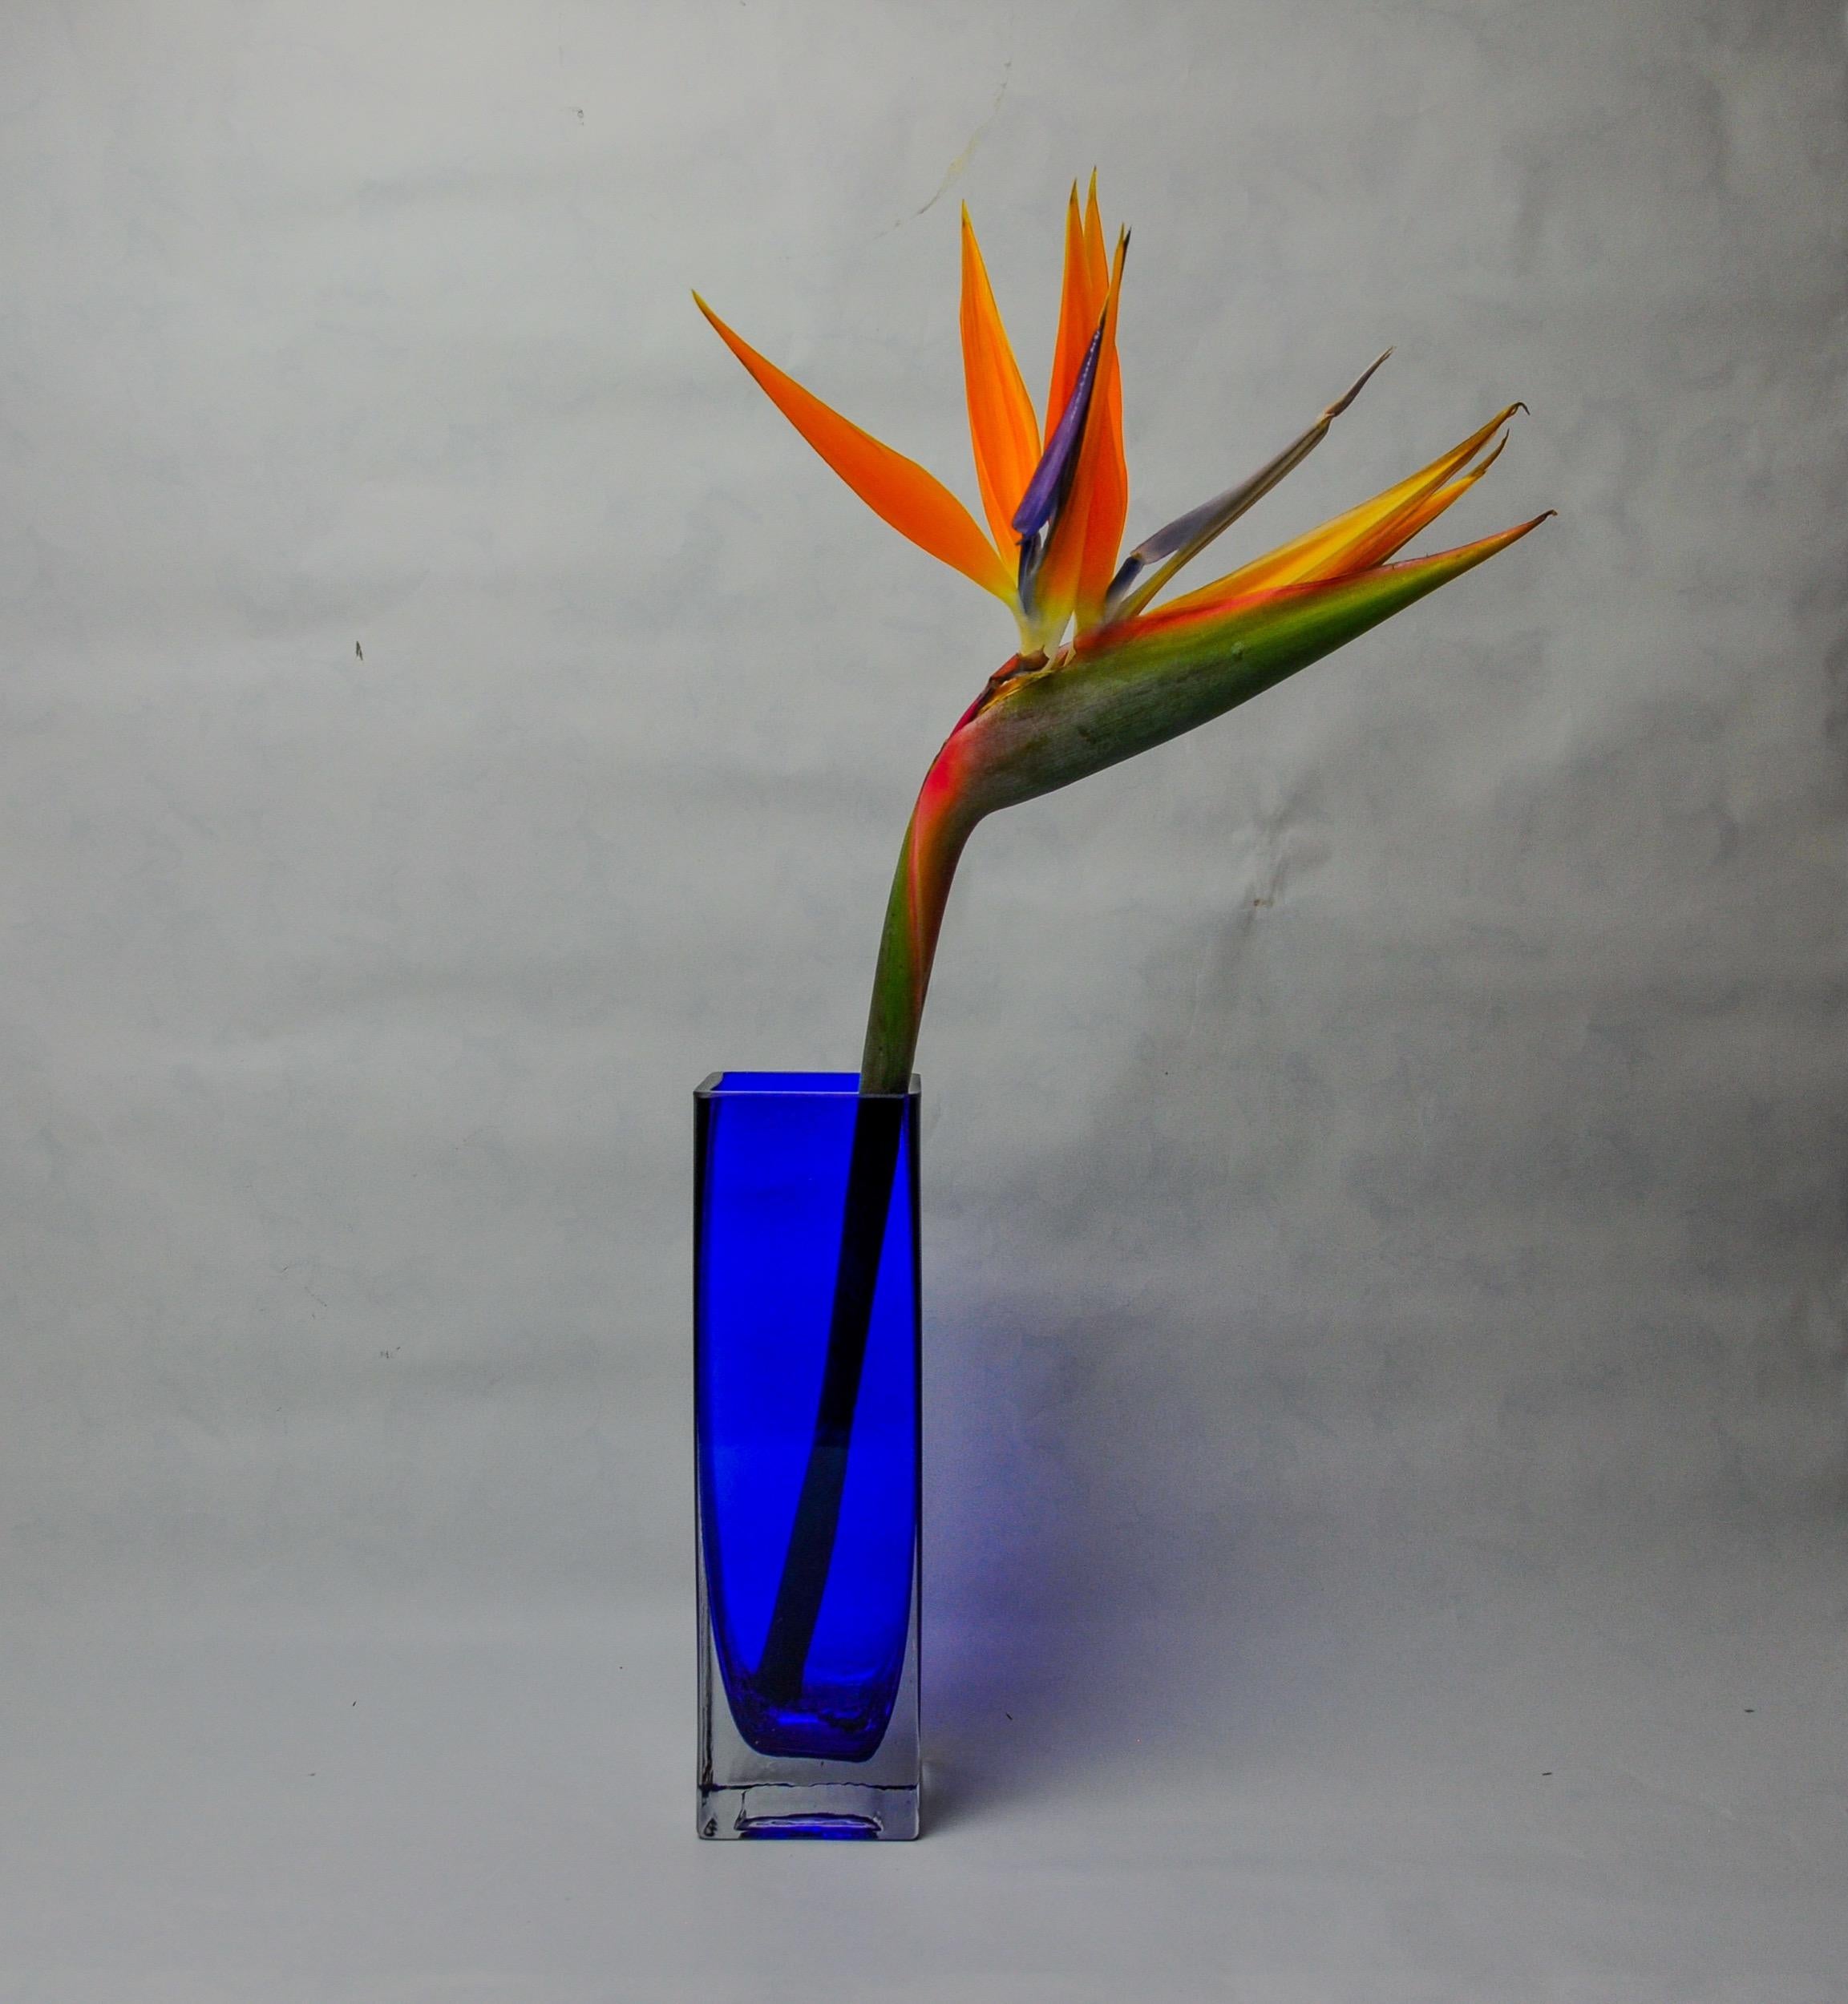 Hervorragende Sommerso-Vase, entworfen und hergestellt von Petr Hora in der Tschechischen Republik in den 1970er Jahren. Viereckige blaue Glasvase, handgefertigt von einem tschechischen Künstler in der 